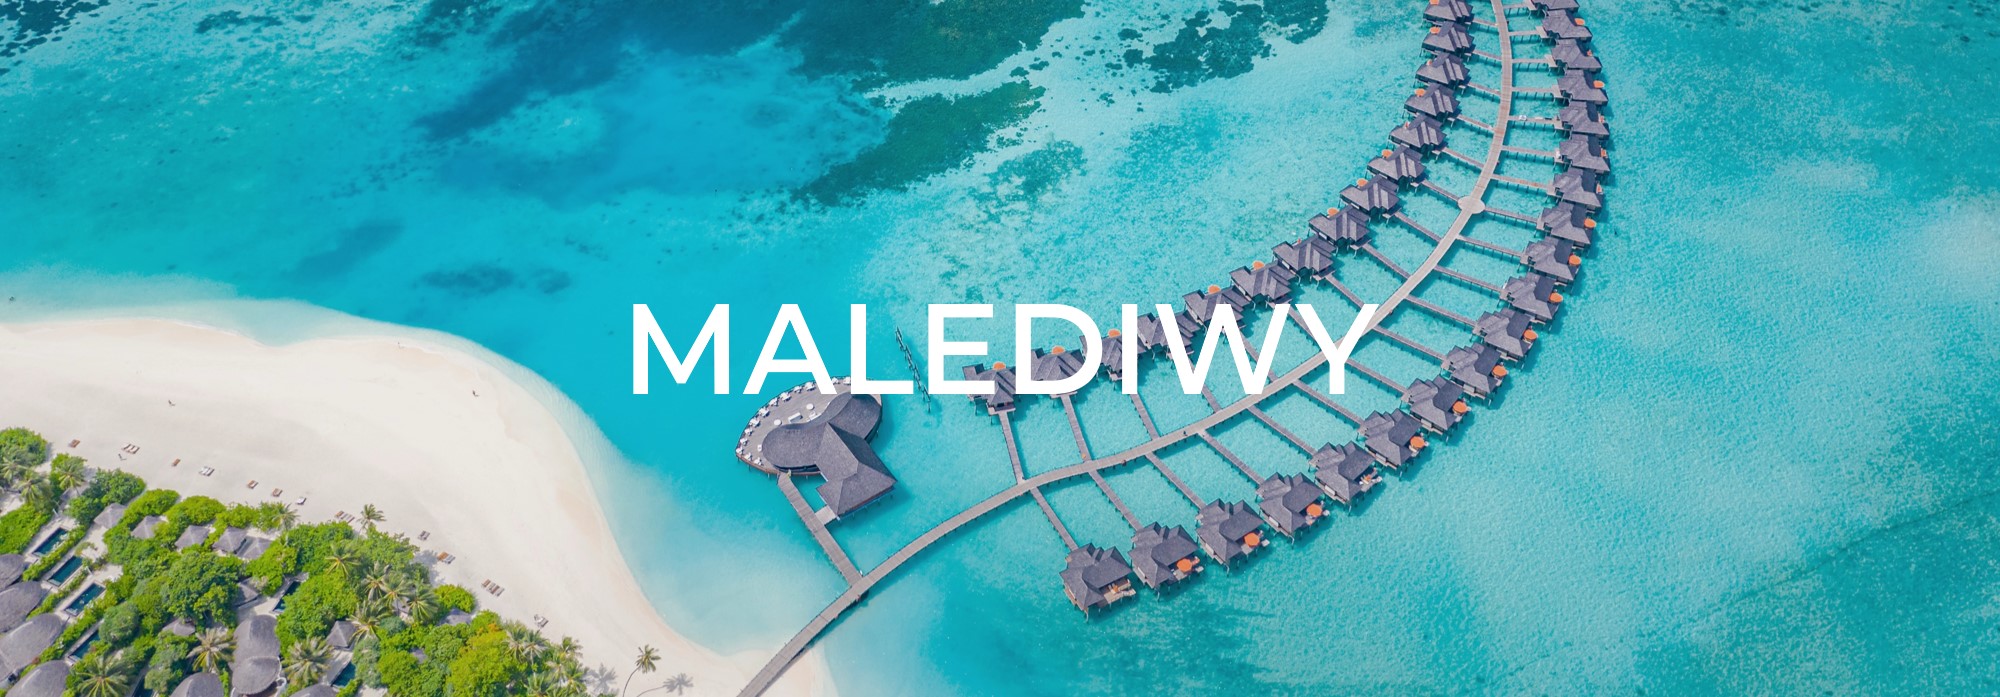 Malediwy ipodroze